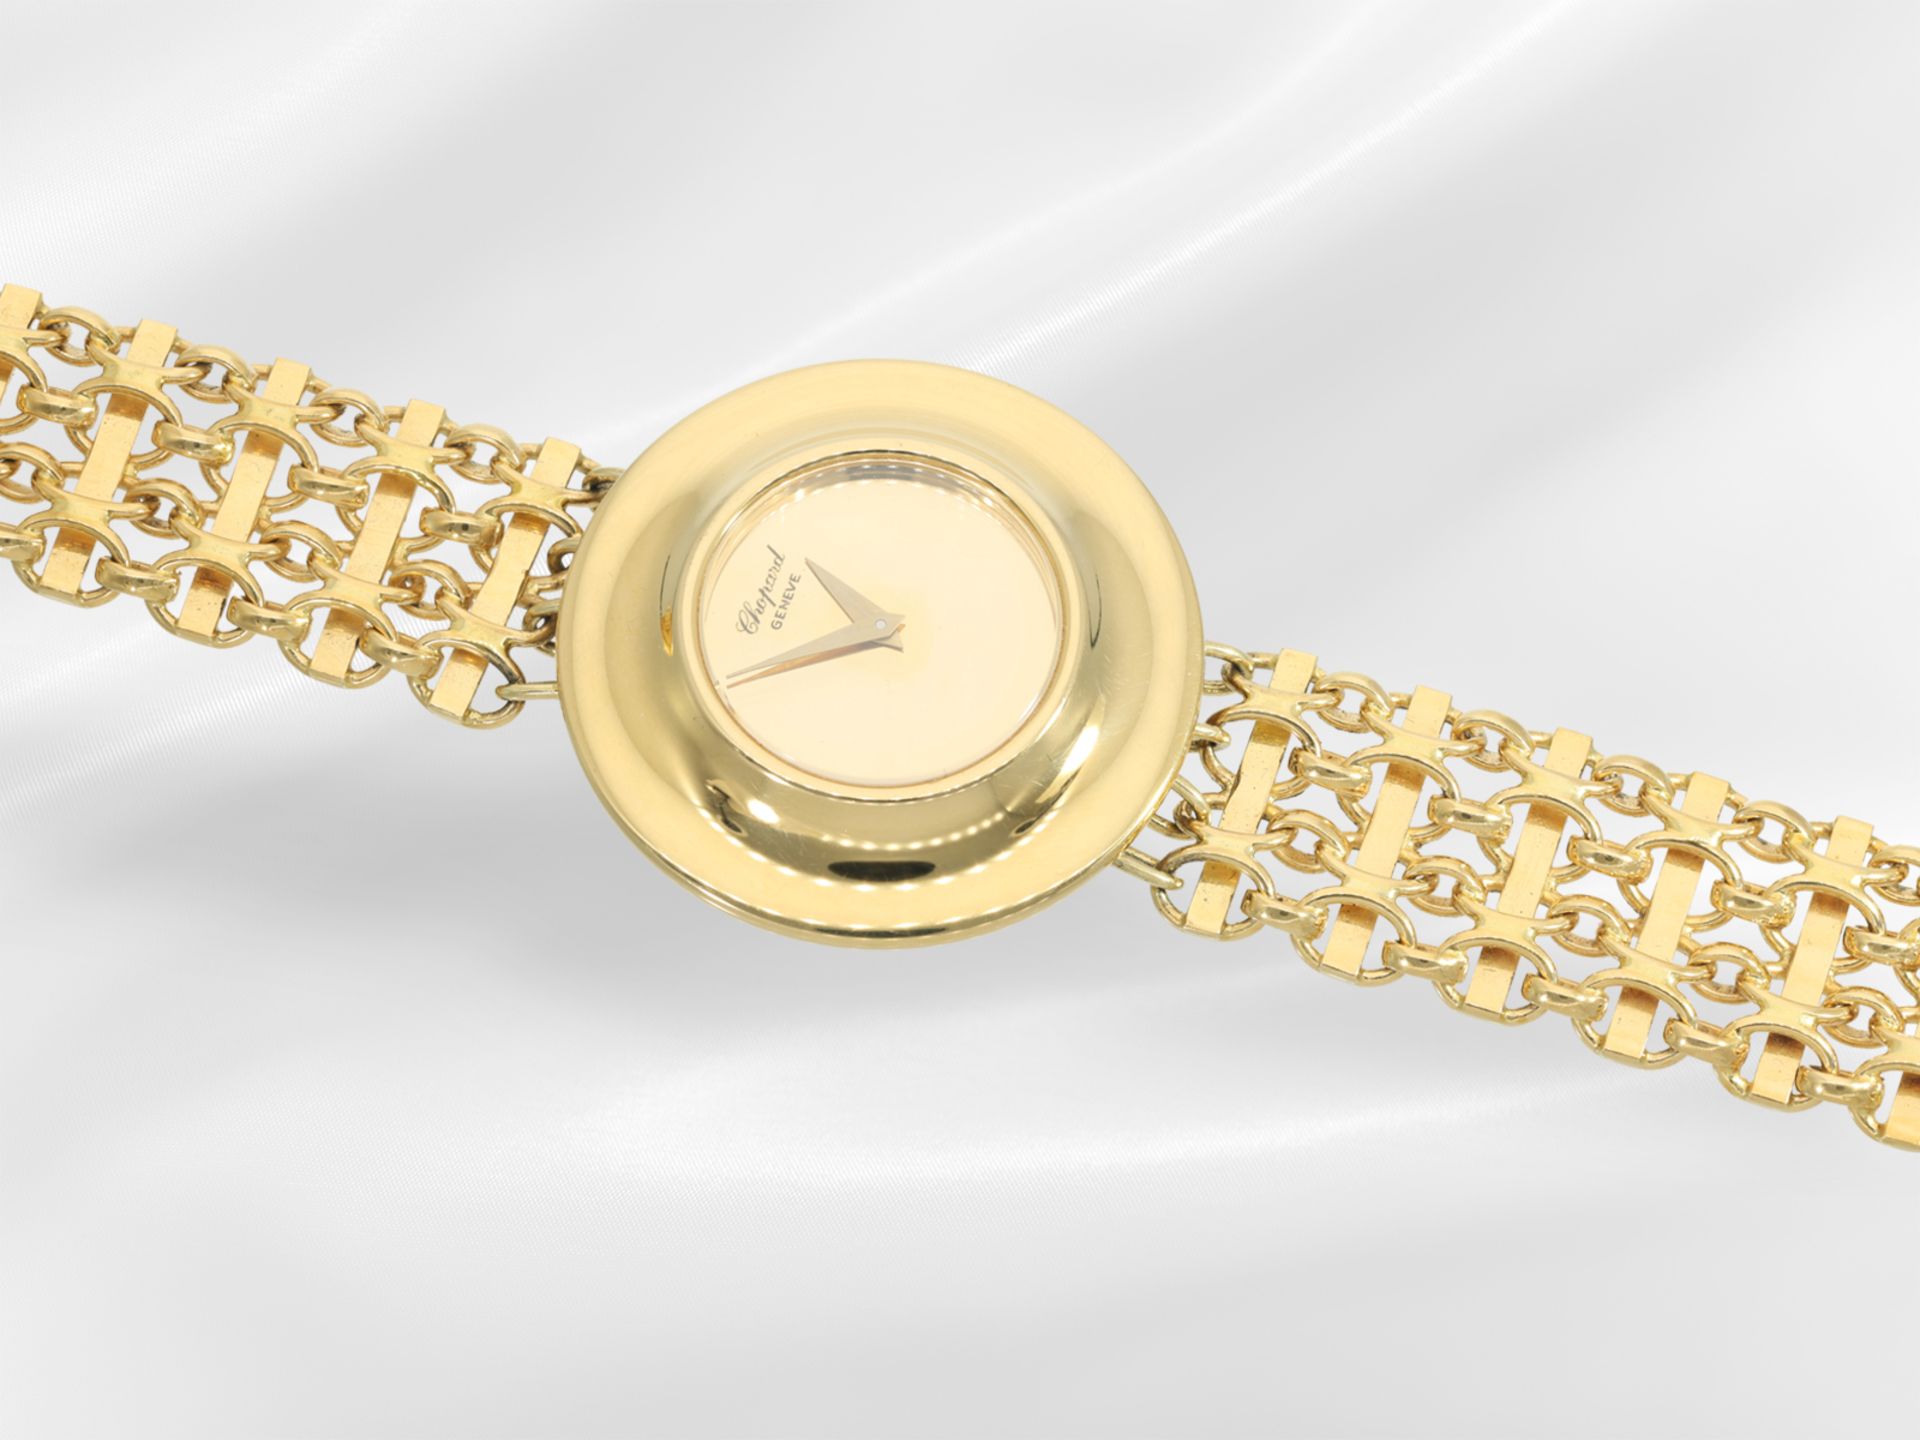 Wristwatch: very rare vintage Chopard ladies' watch in 18K gold, 70s